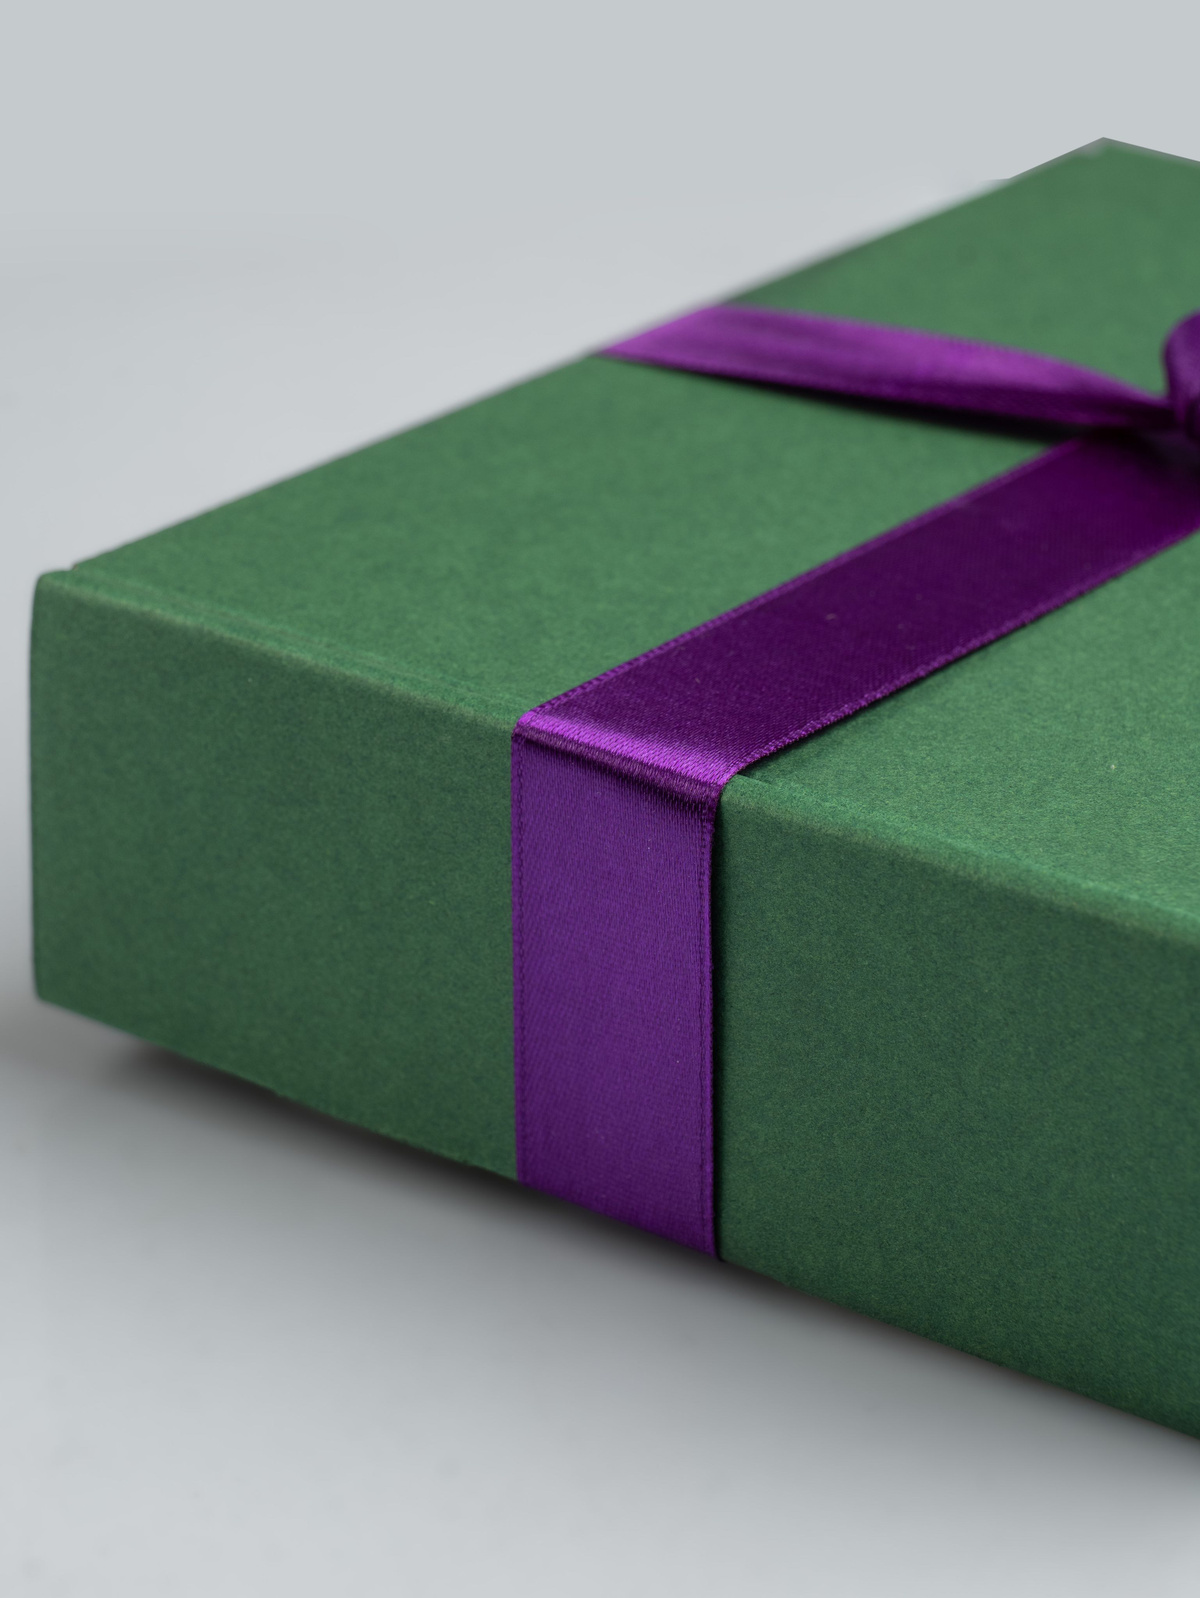 Такой подарок не только порадует получателя, но и станет прекрасным украшением для любого праздника или события. Он идеально подойдет для Нового года, дня рождения, свадьбы, юбилея или любого другого торжества. В комплект входит одна коробка, которая имеет размеры 12x10x3 см. Вы можете выбрать подходящую наклейку для каждой категории людей и сделать подарок еще более индивидуальным.